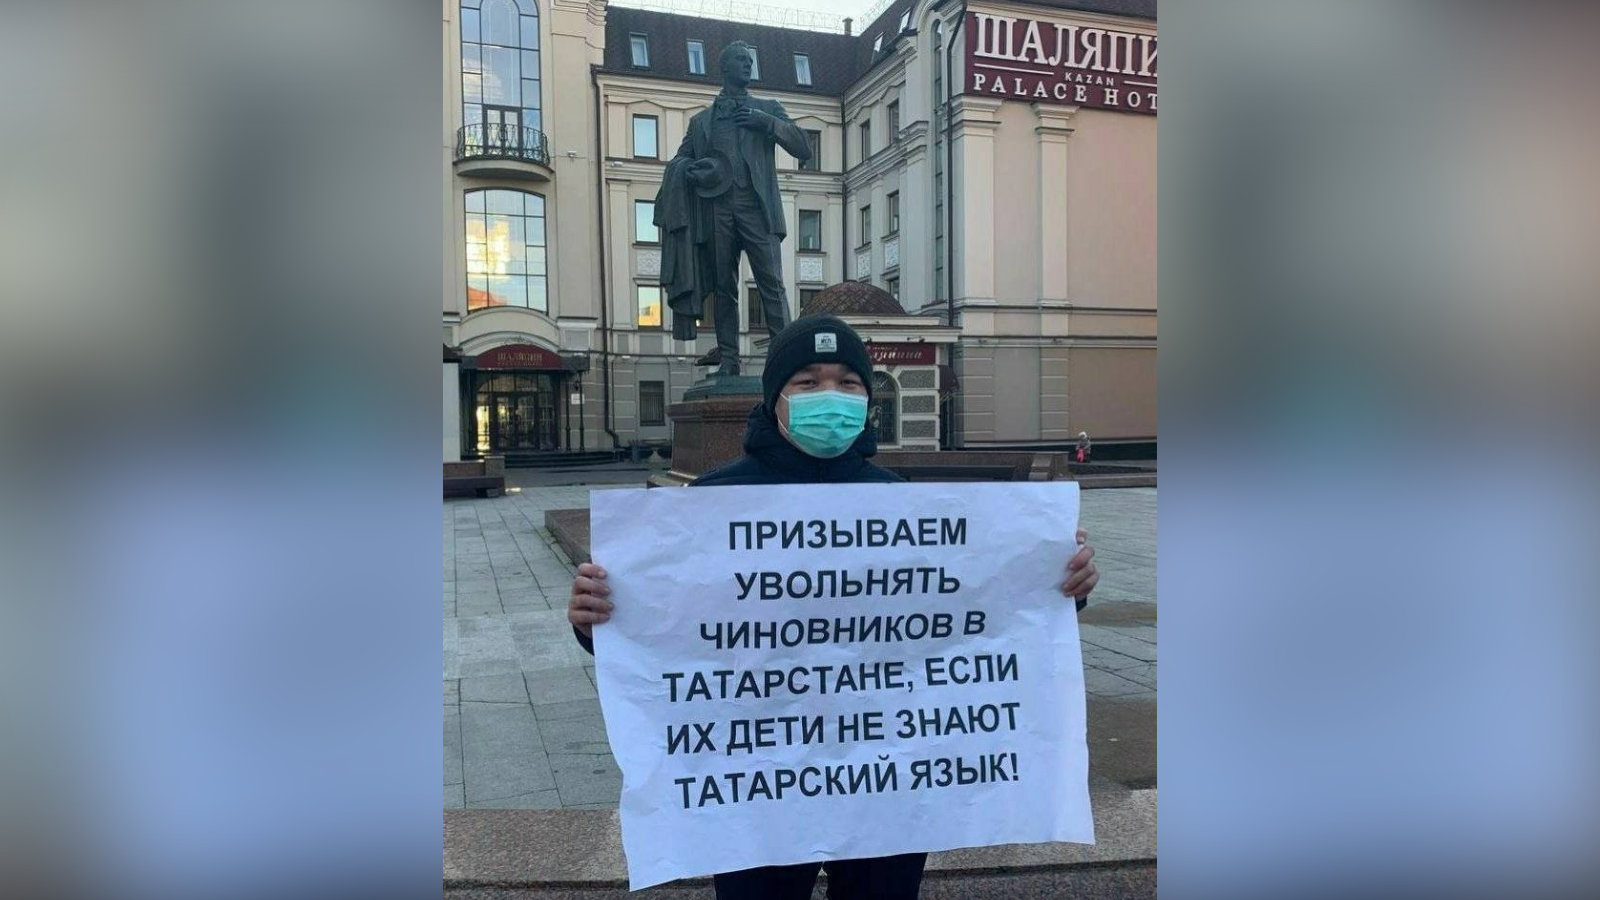 В Казани прошел пикет с требованием уволить чиновников, чьи дети не знают татарский язык